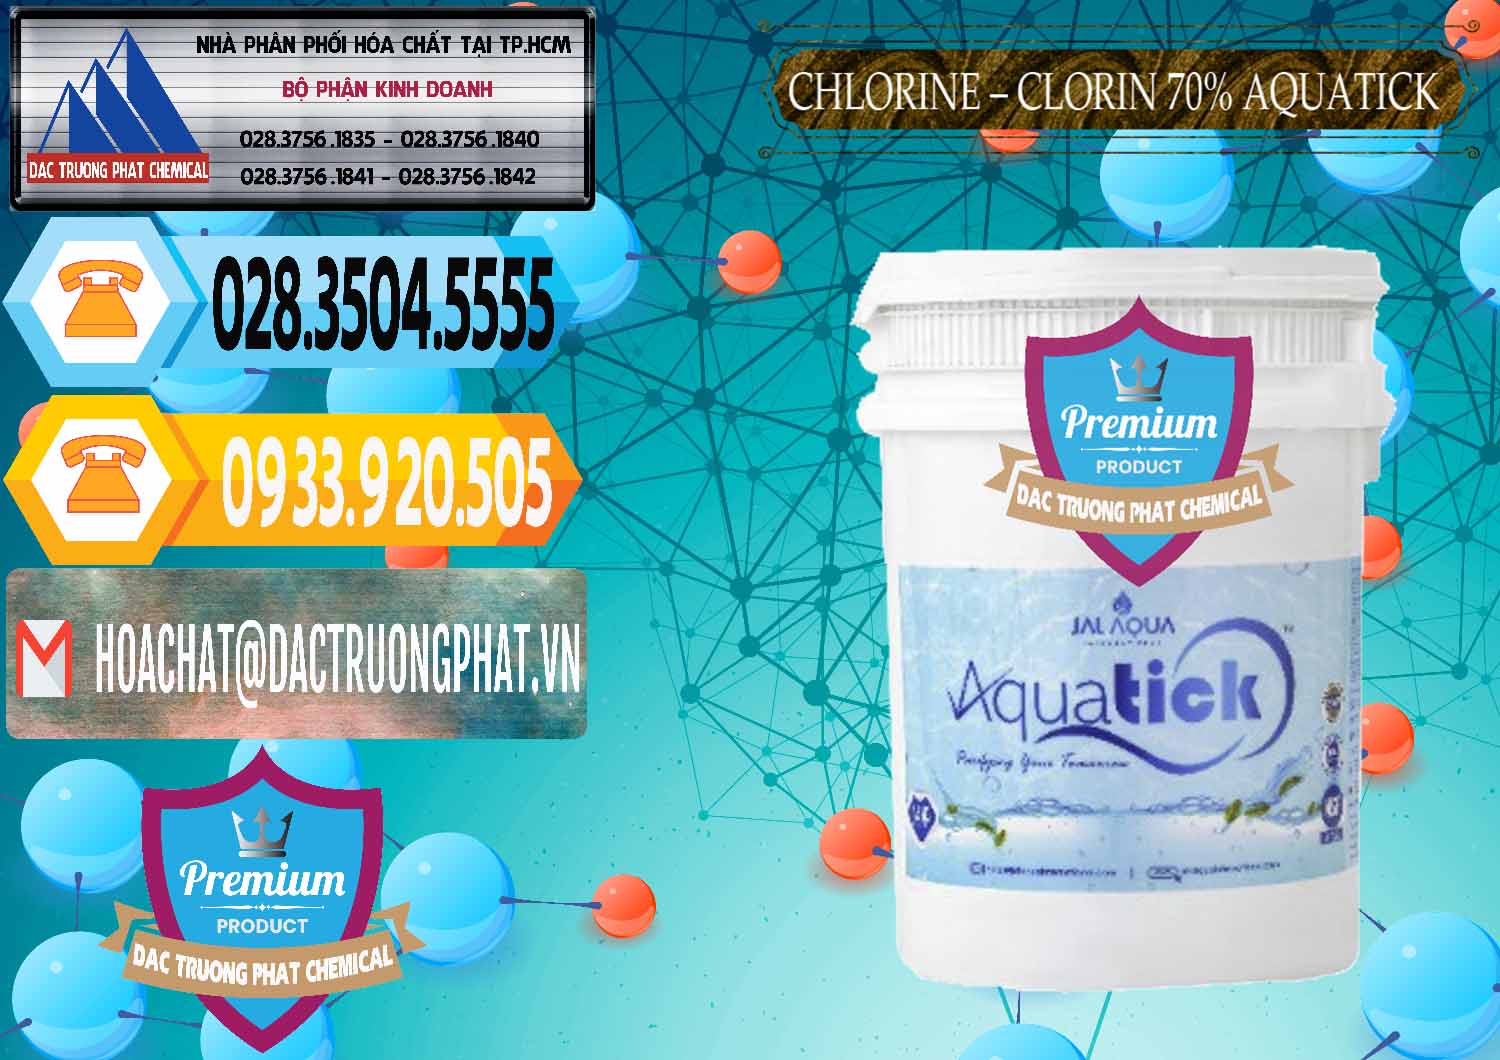 Bán - cung cấp Chlorine – Clorin 70% Aquatick Thùng Cao Jal Aqua Ấn Độ India - 0237 - Cung cấp và nhập khẩu hóa chất tại TP.HCM - hoachattayrua.net